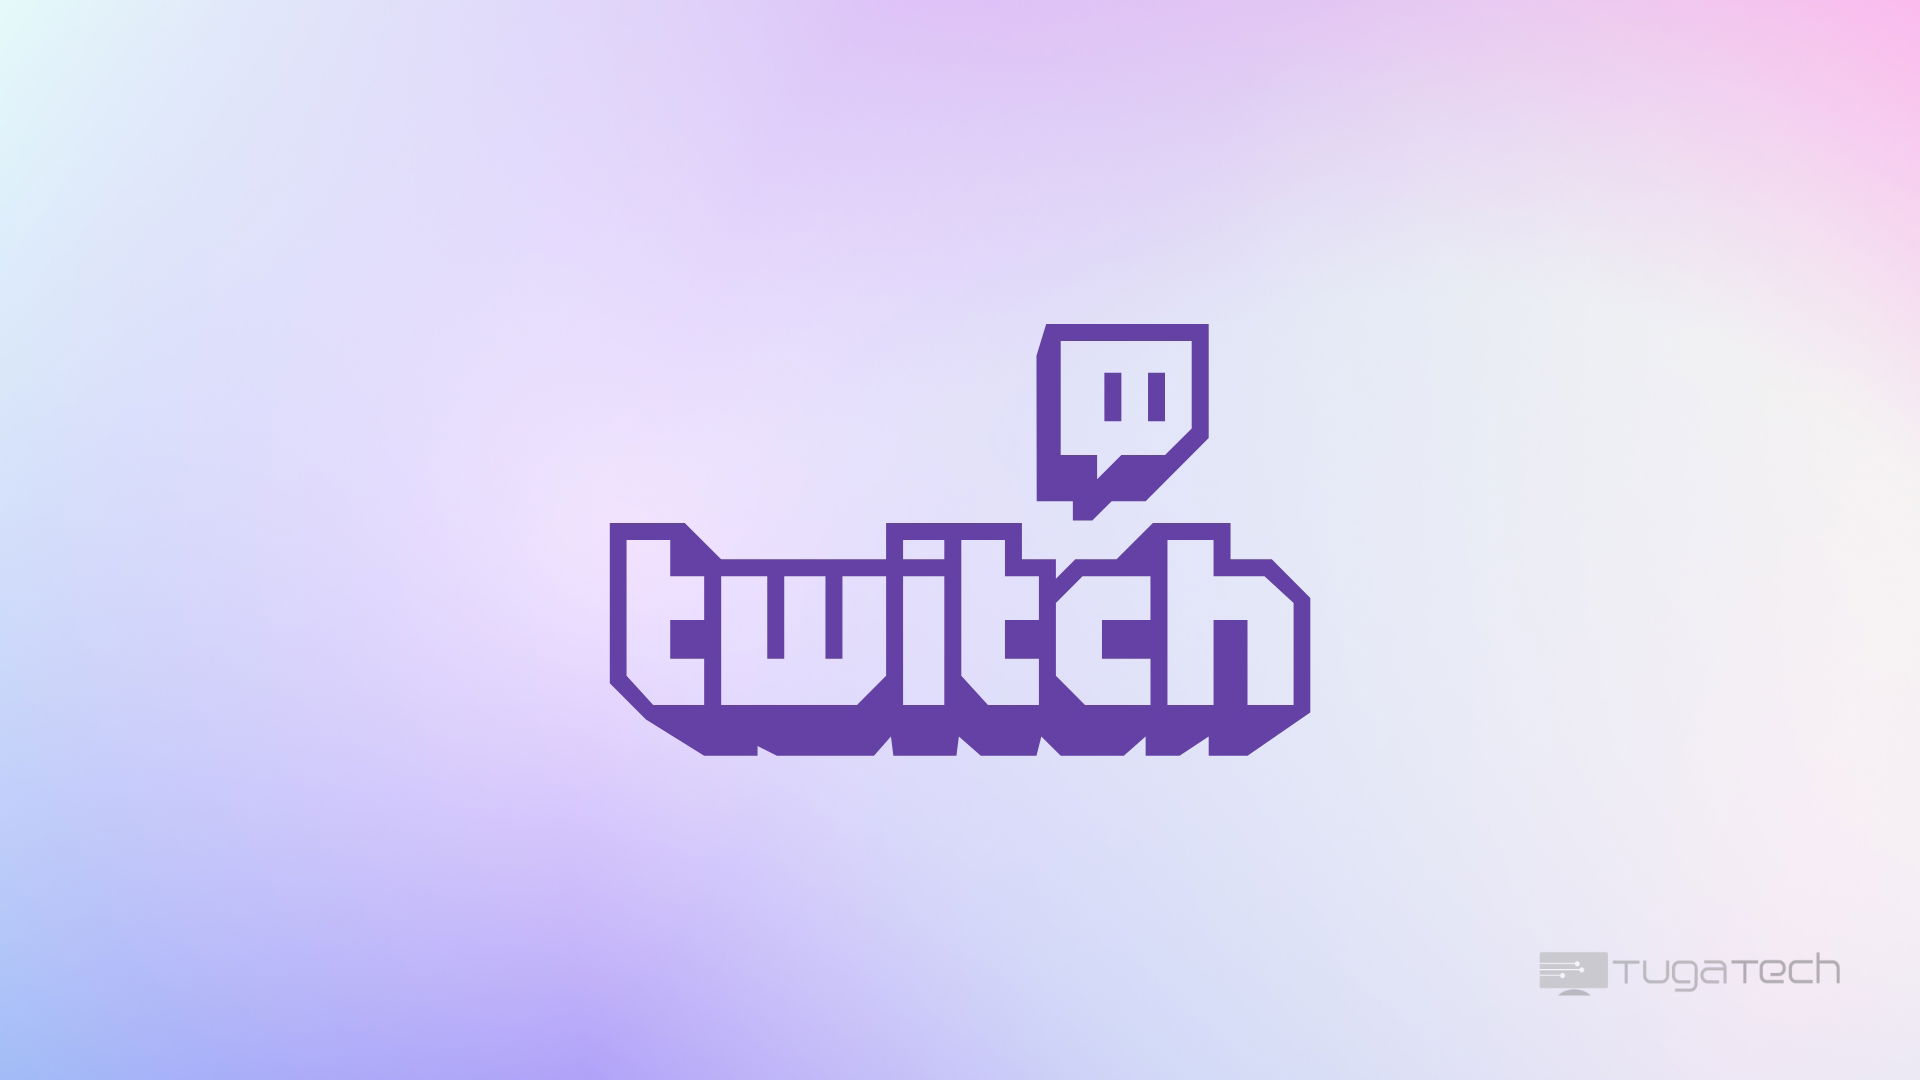 Logo do Twitch com fundo roxo